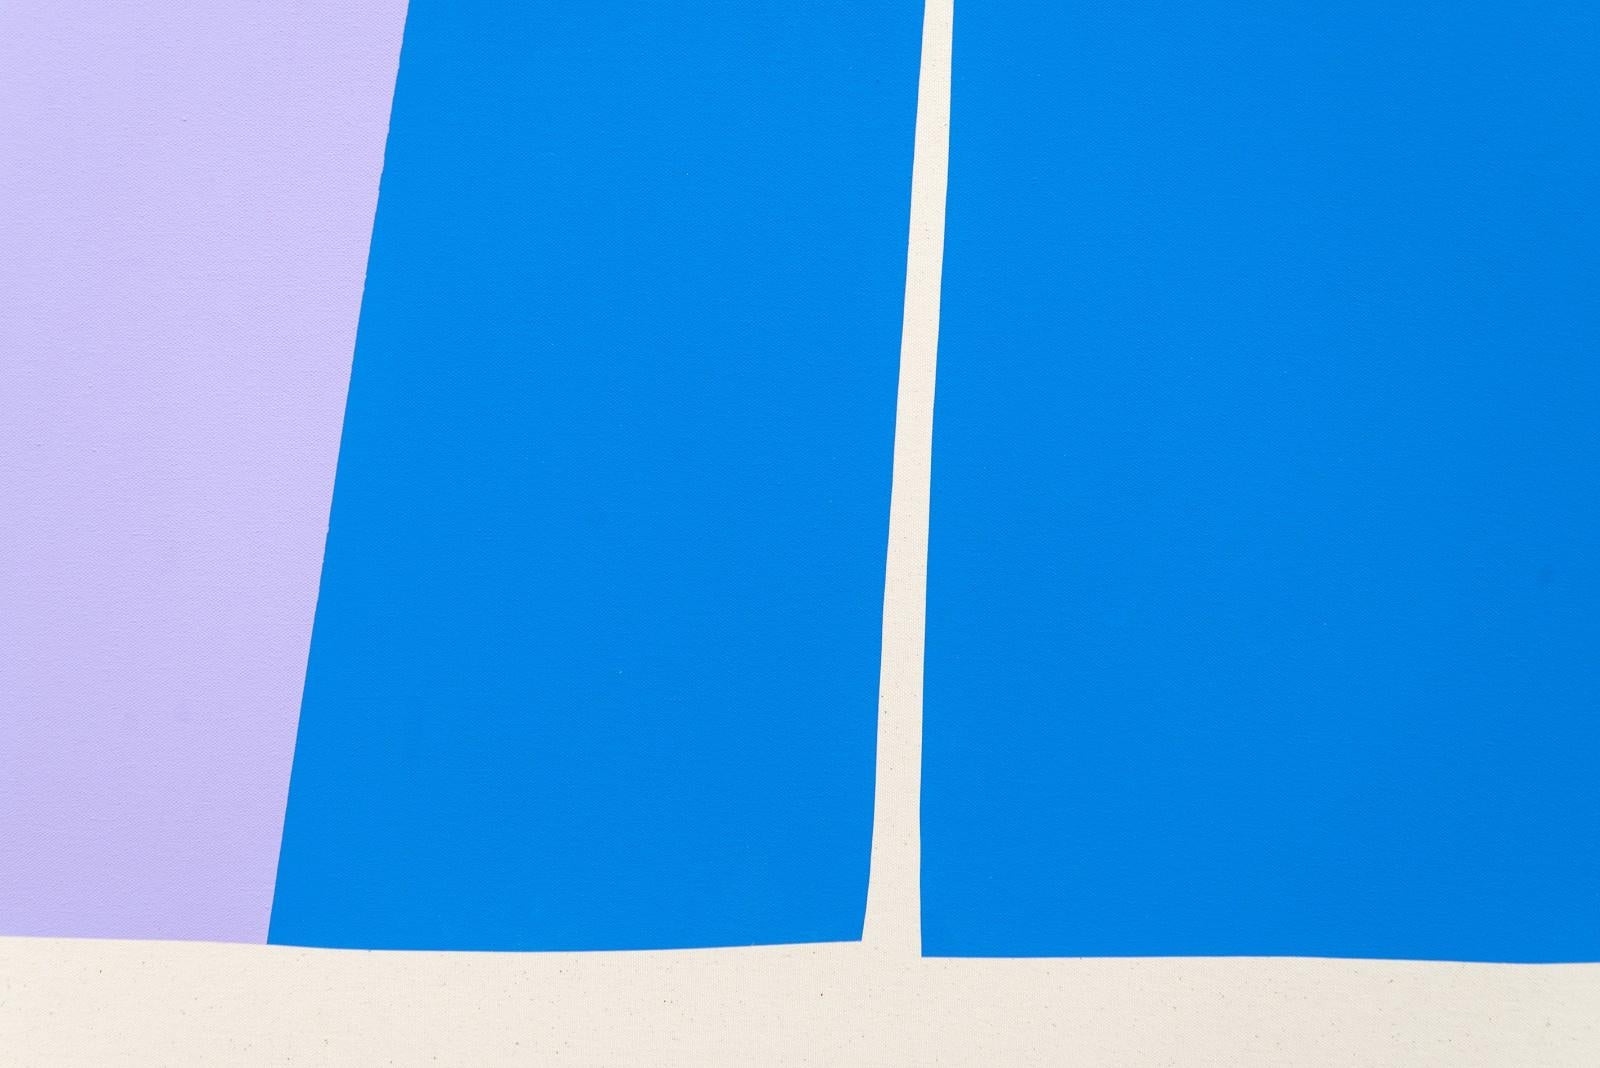 Des formes géométriques simples et fortes dans des couleurs vives - bleu royal, rouge, marine et lavande - créent une scène fraîche et amusante dans cette nouvelle œuvre d'Aron Hill, de Calgary. Elle fait partie d'une série de compositions